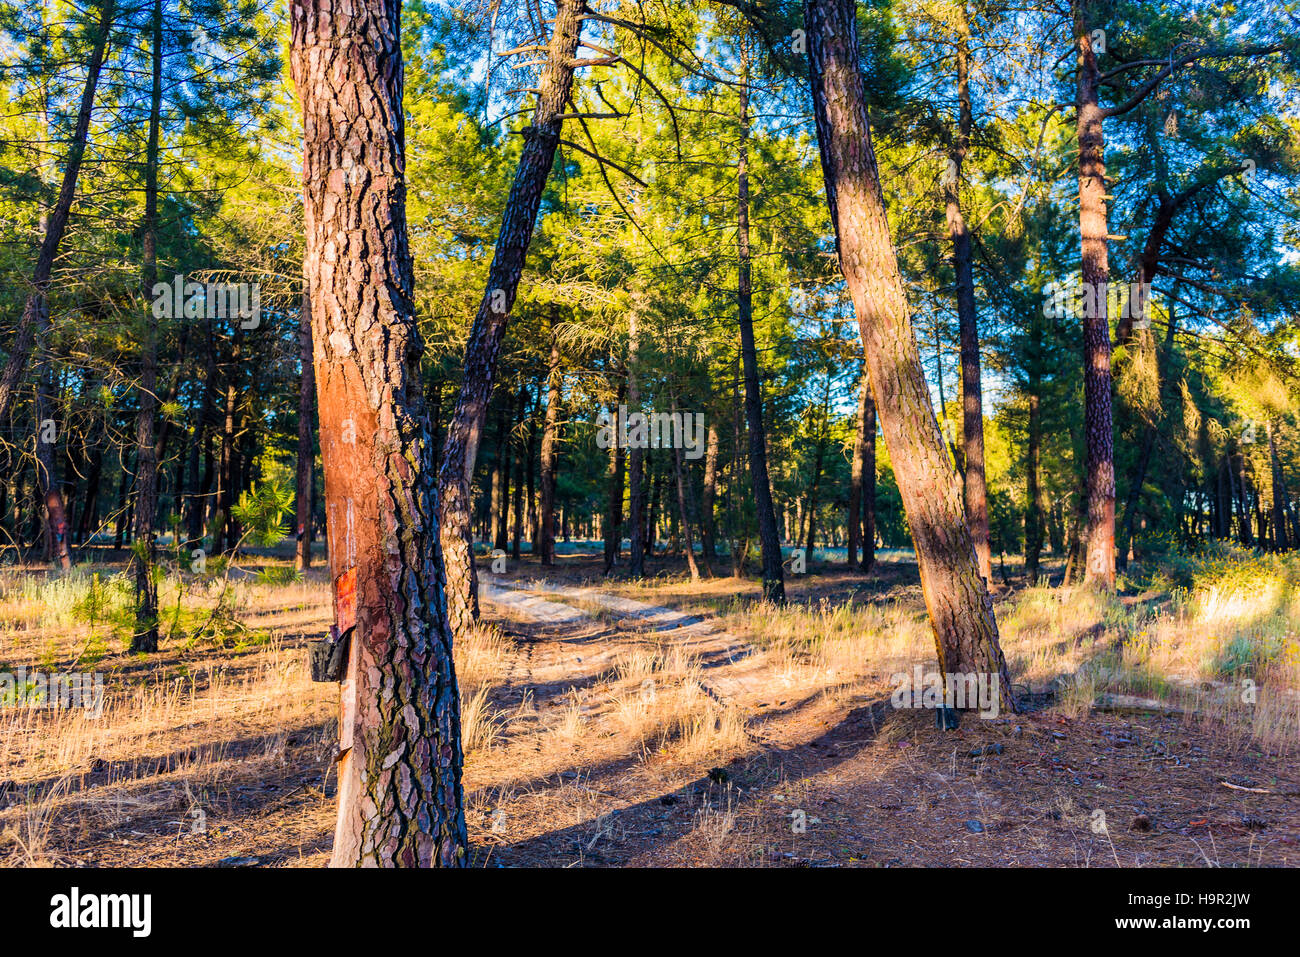 La resina della foresta di pini. Cuéllar, Segovia, Castilla y León, Spagna, Europa Foto Stock